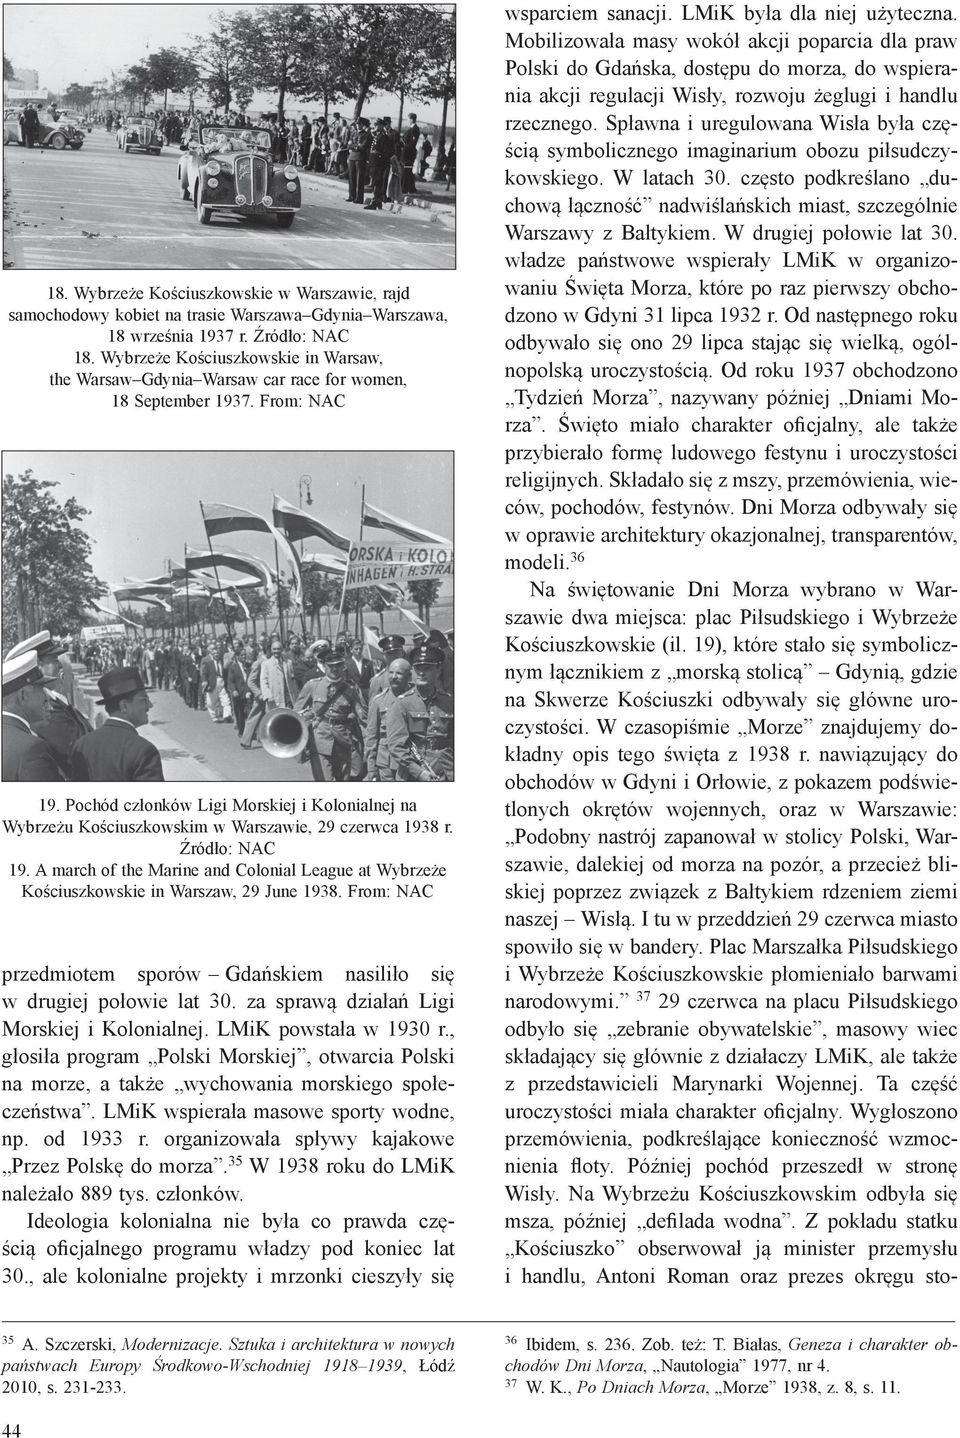 Pochód członków Ligi Morskiej i Kolonialnej na Wybrzeżu Kościuszkowskim w Warszawie, 29 czerwca 1938 r. Źródło: NAC 19.